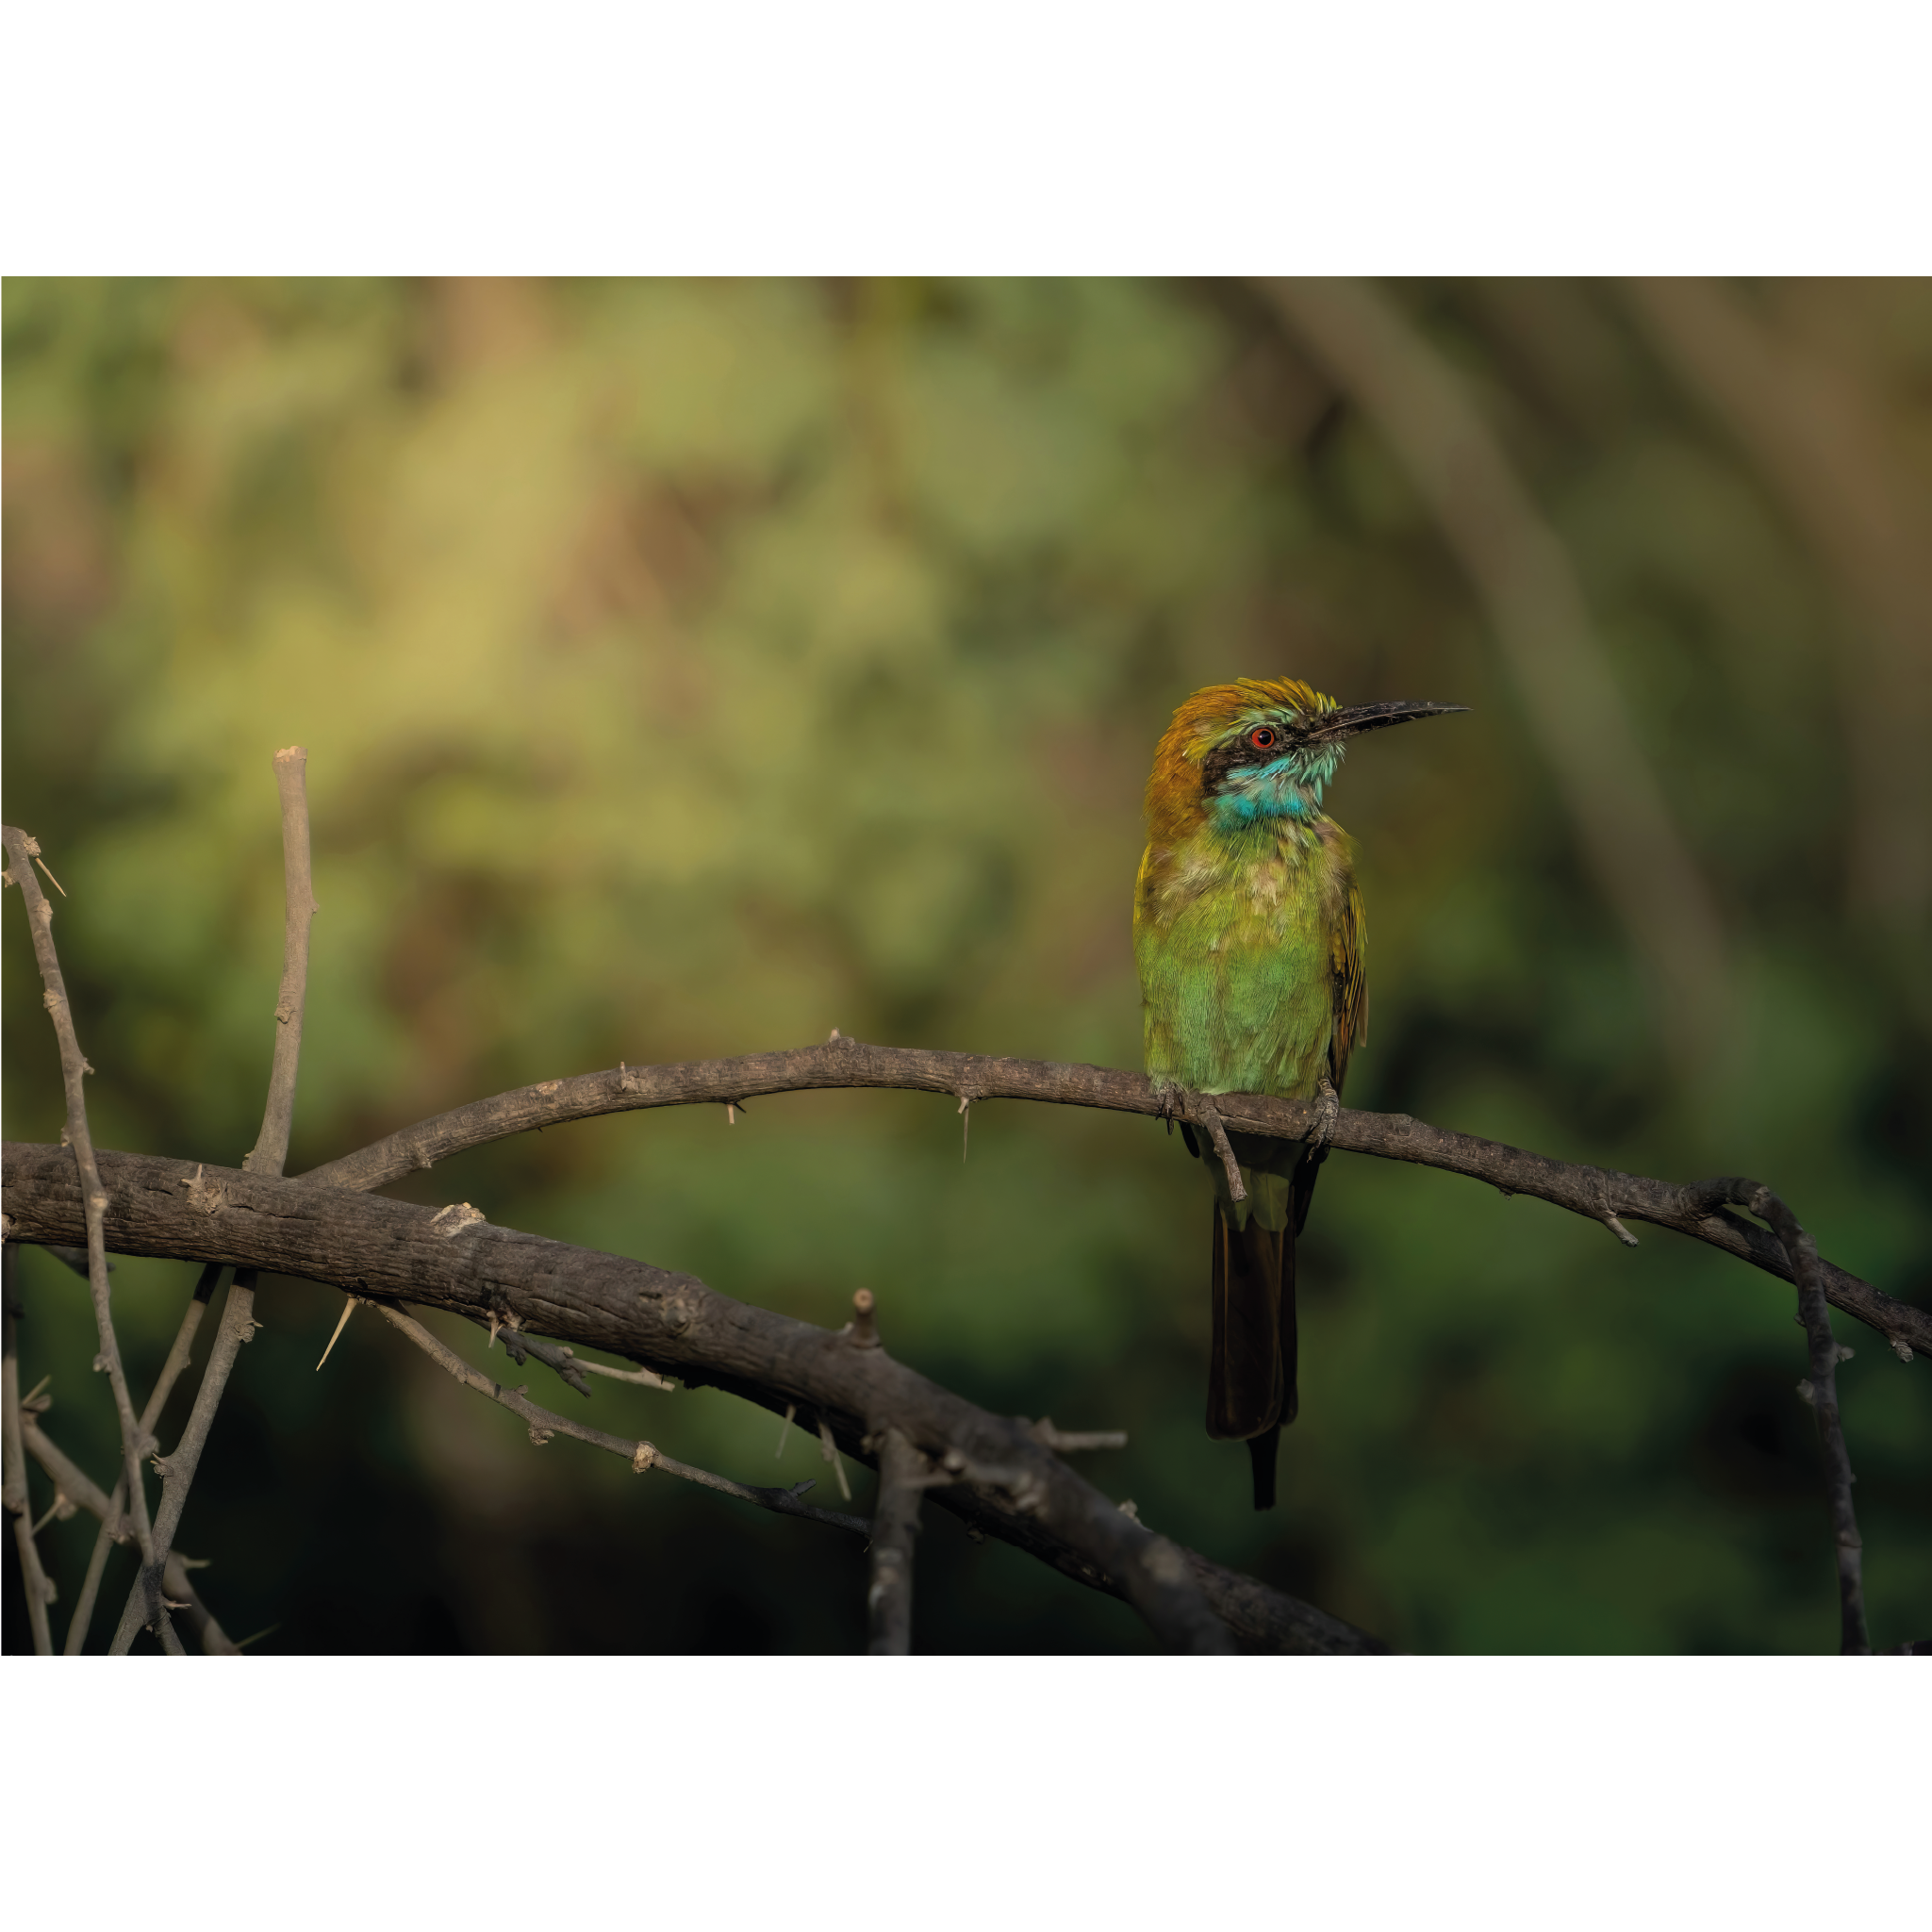 Arabian Green Bee-eater by Khalid Al Astad